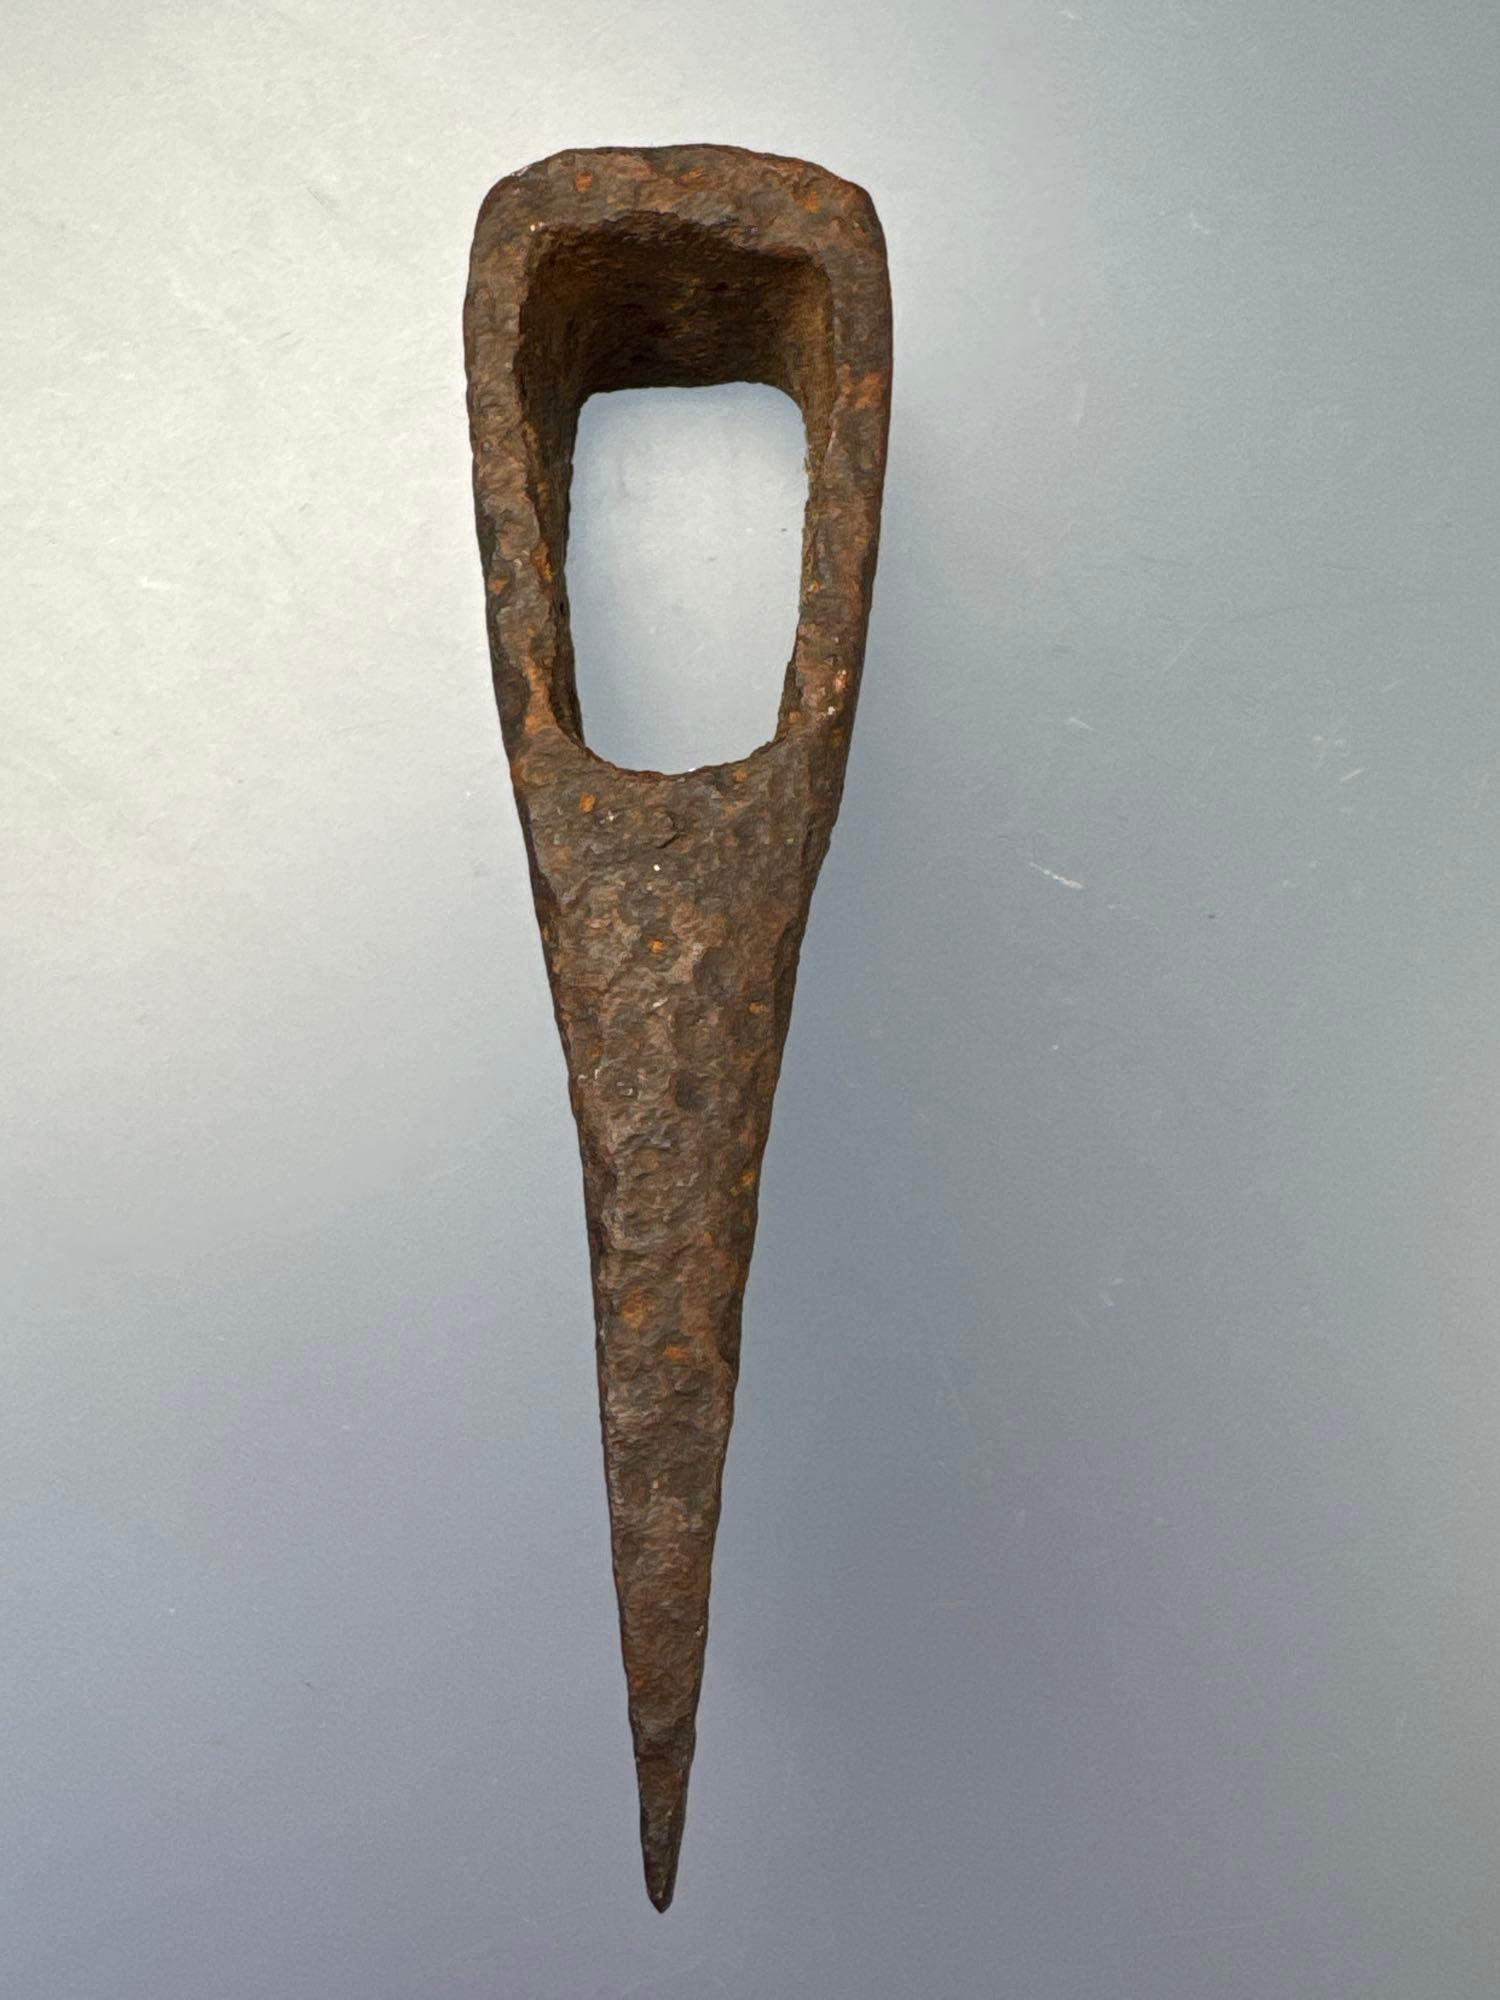 NICE 5 1/2" 1700's Hudson Bay Iron Trade Axe, Rarer Earlier Type, Ex: Dean Thomas of Fairfield, PA